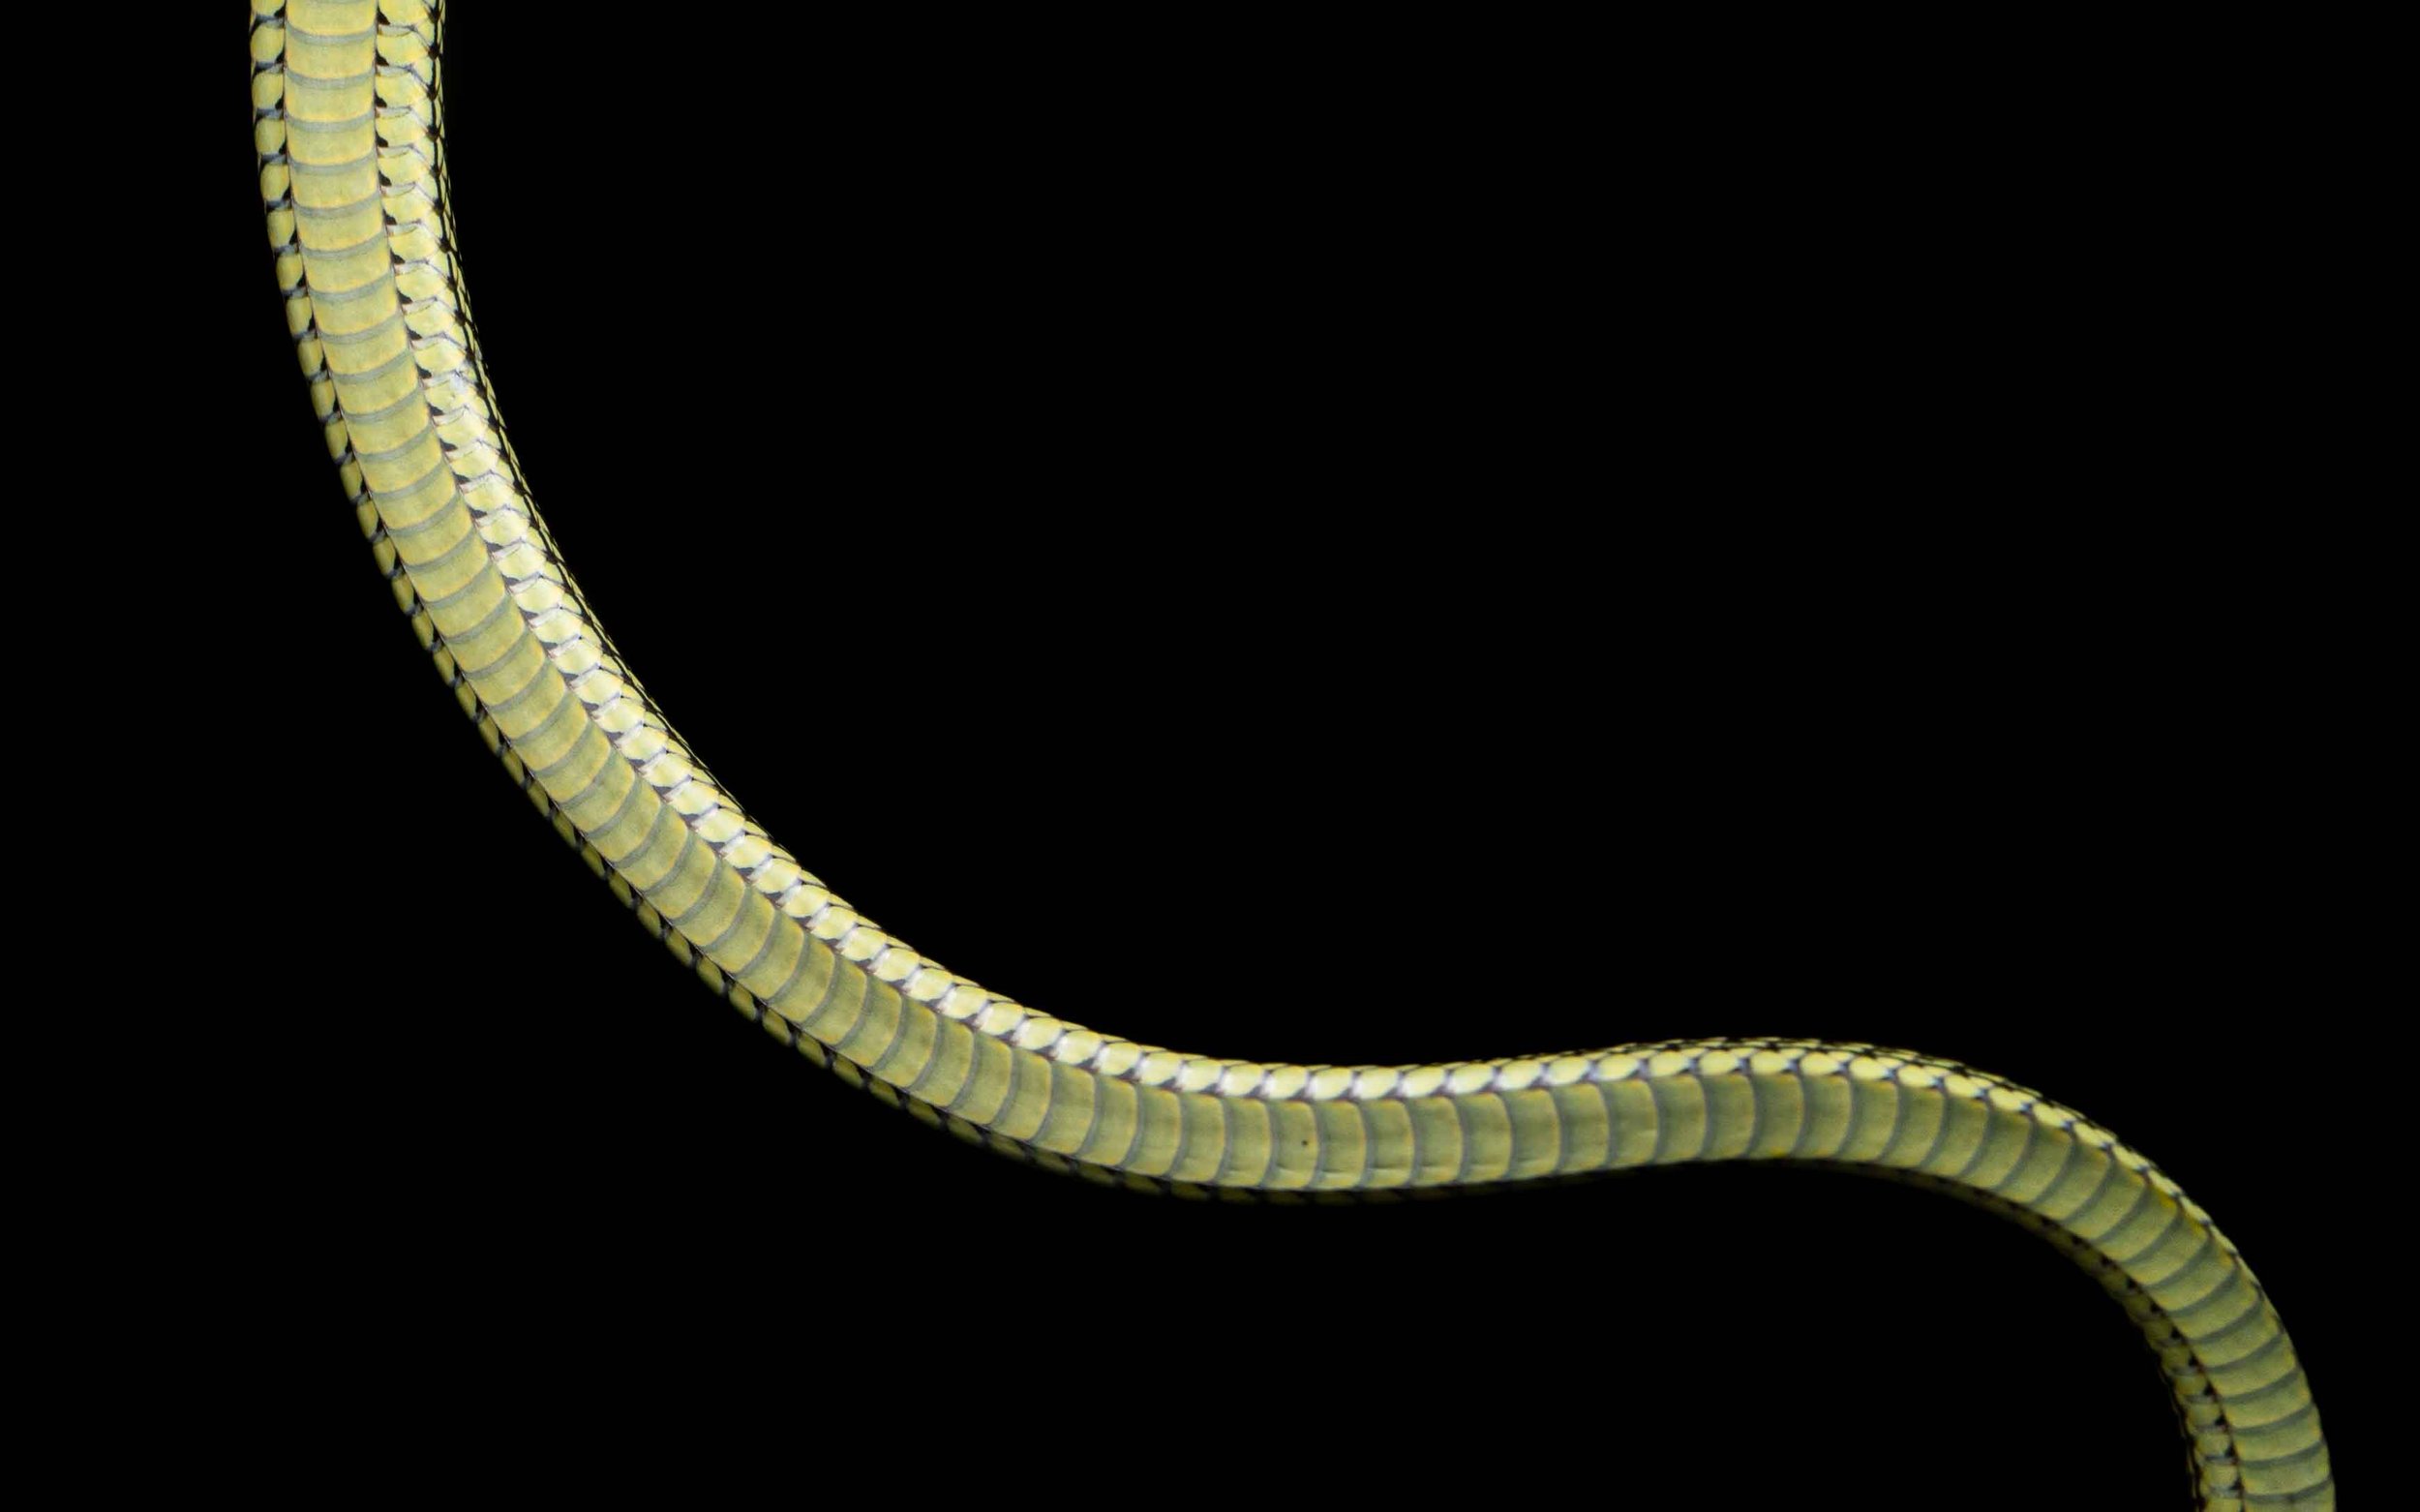 Ornate flying snake - Golden Tree snake - Chrysopelea ornata